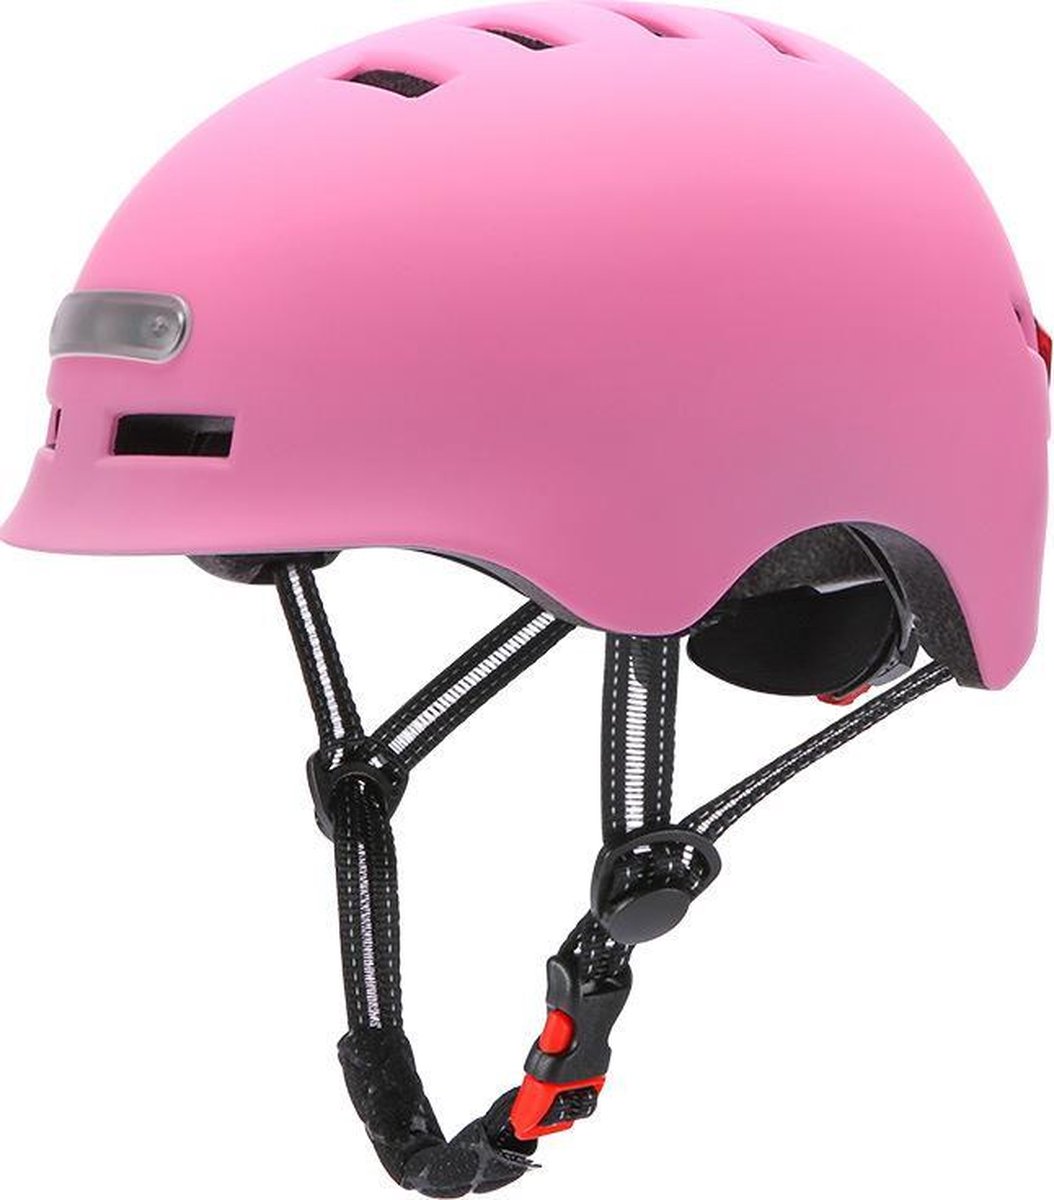 Fietshelm met ingebouwde voor- en achterlicht|LED licht |SMART helm|, fiets, step| Maat = M | Kleur = roze| Oplaadbaar!